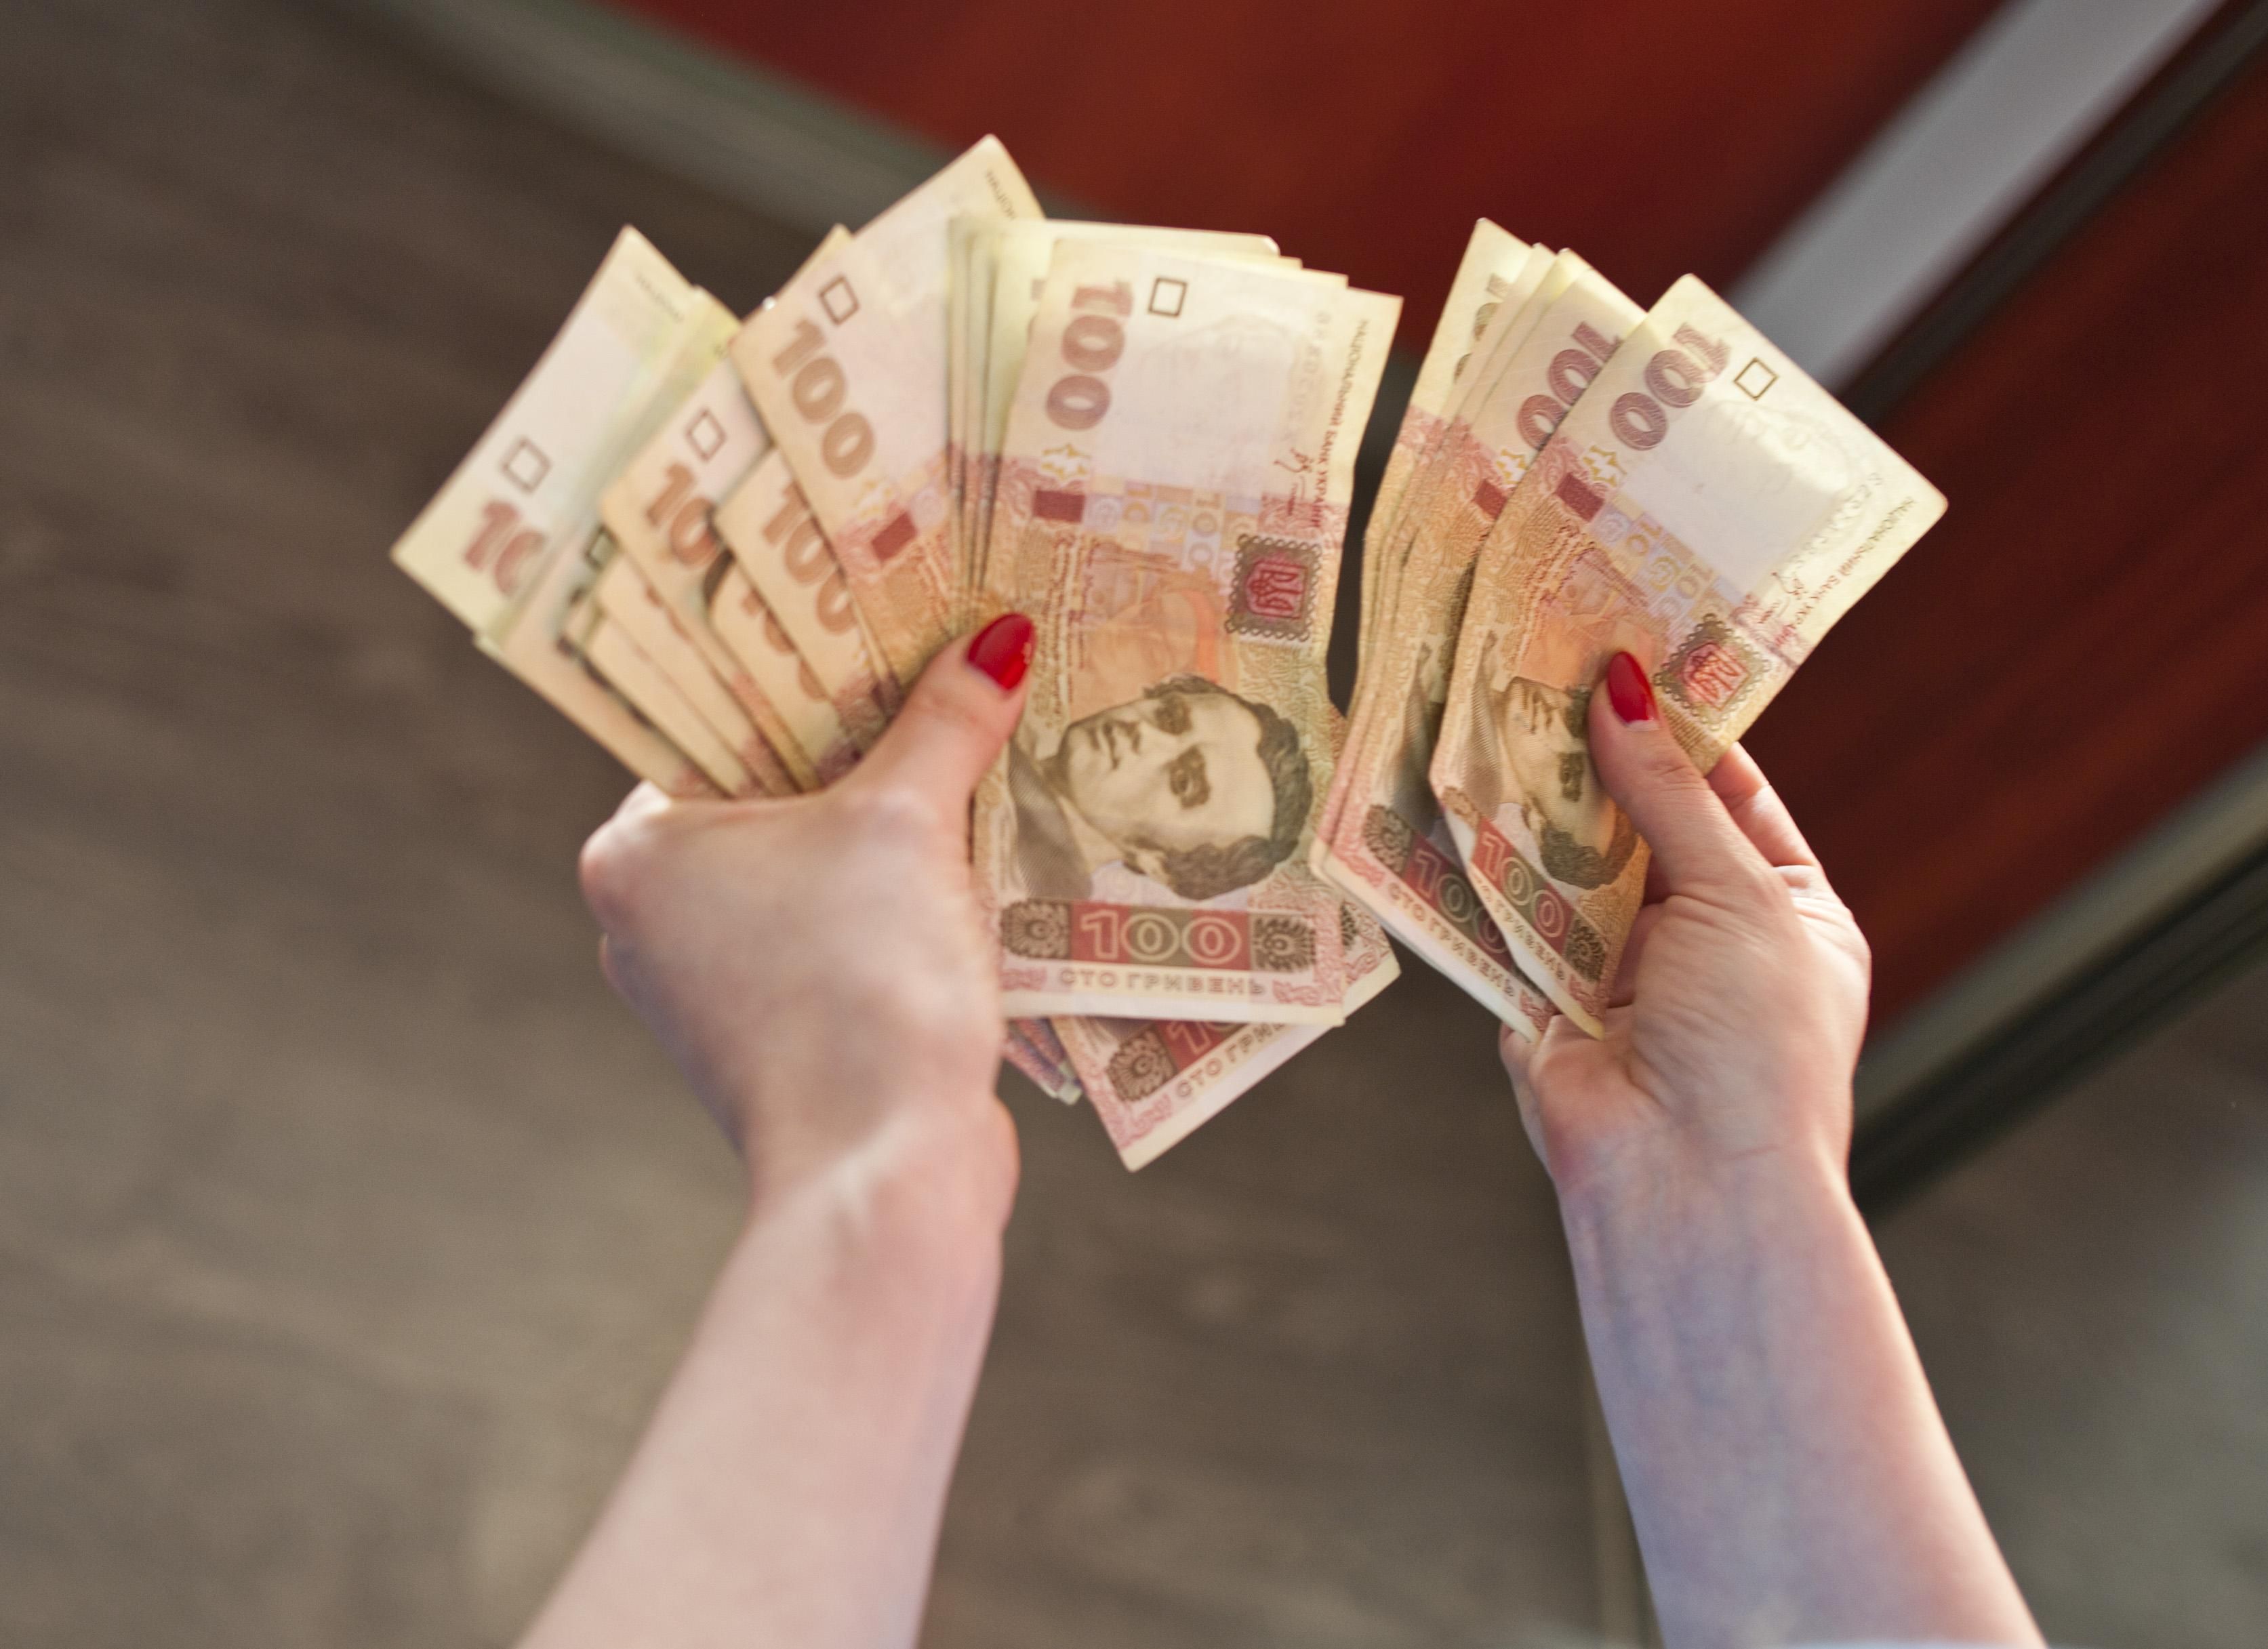 Средняя зарплата в Украине 2020 - какой будет прогноз по годам до 2022 года